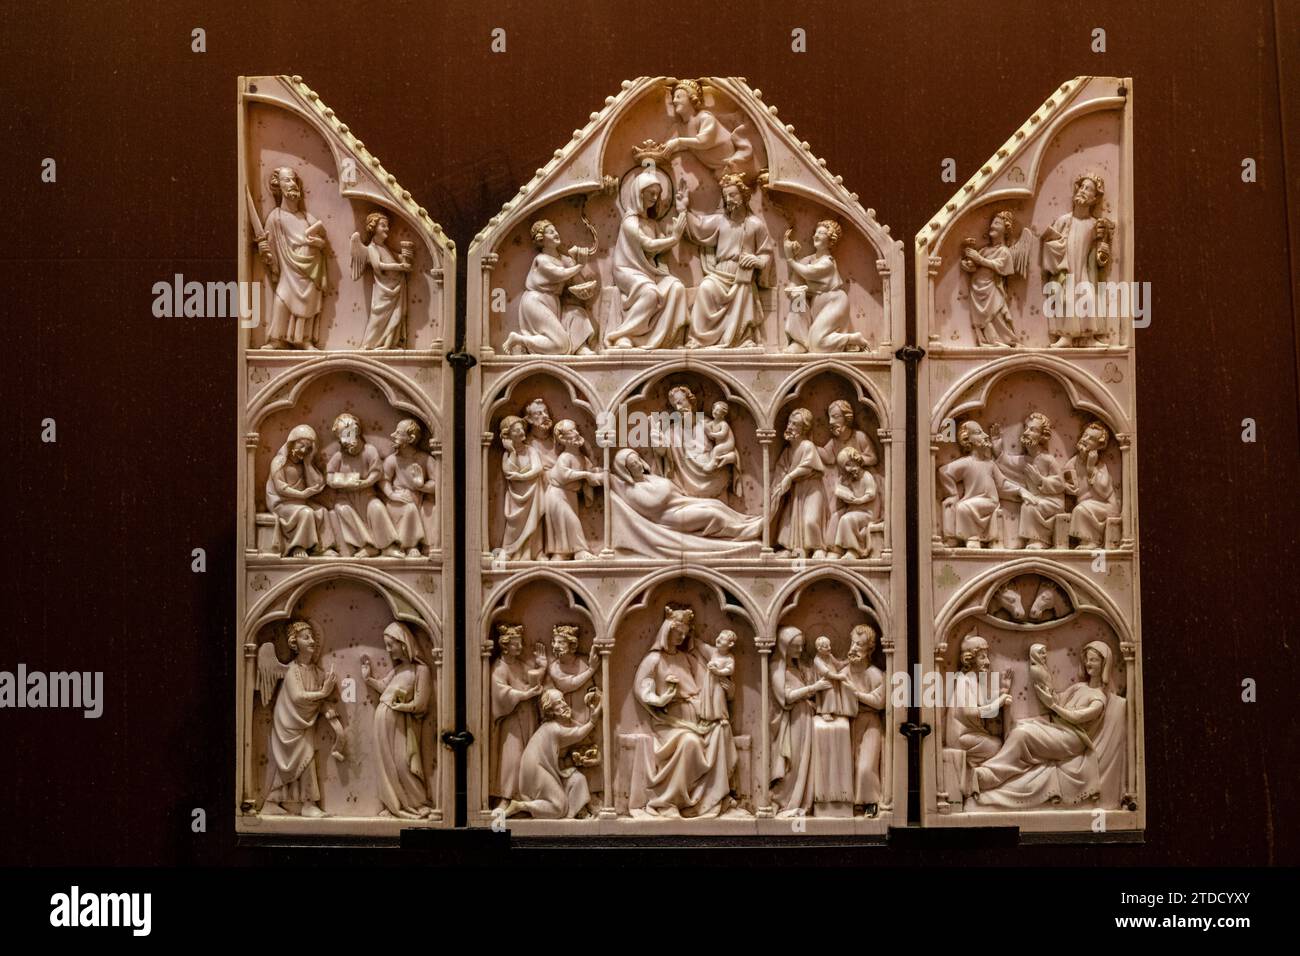 triptico con escenas de la vida y muerte de la virgen Maria, Paris, siglo XII, Fundación Calouste Gulbenkian,  («Fundação Calouste Gulbenkian»), Lisbo Stock Photo